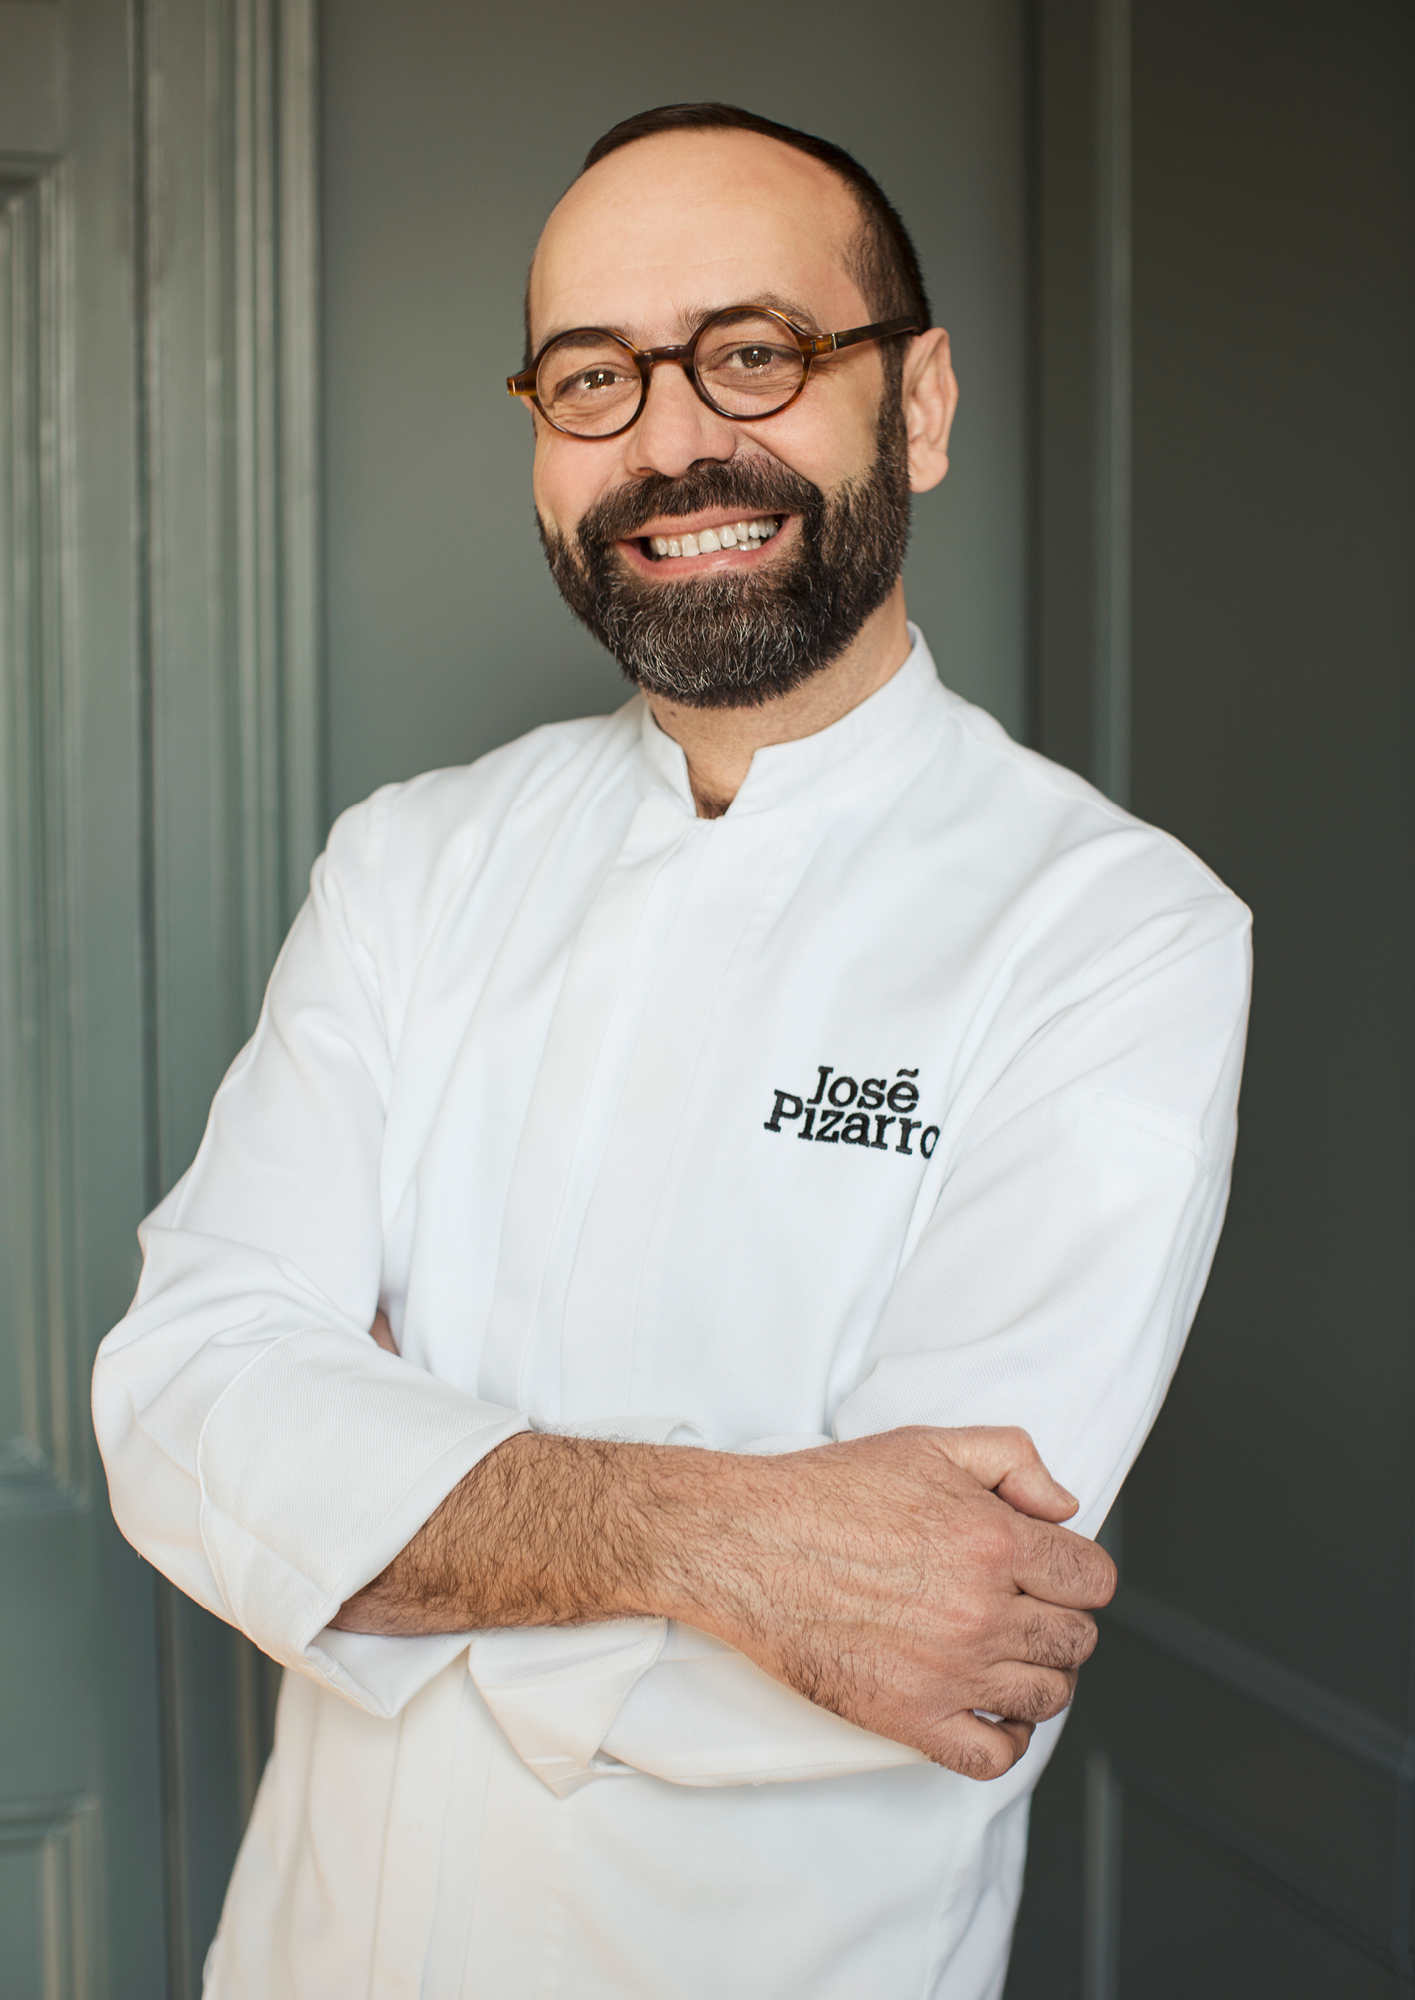 Chef Jose Pizarro